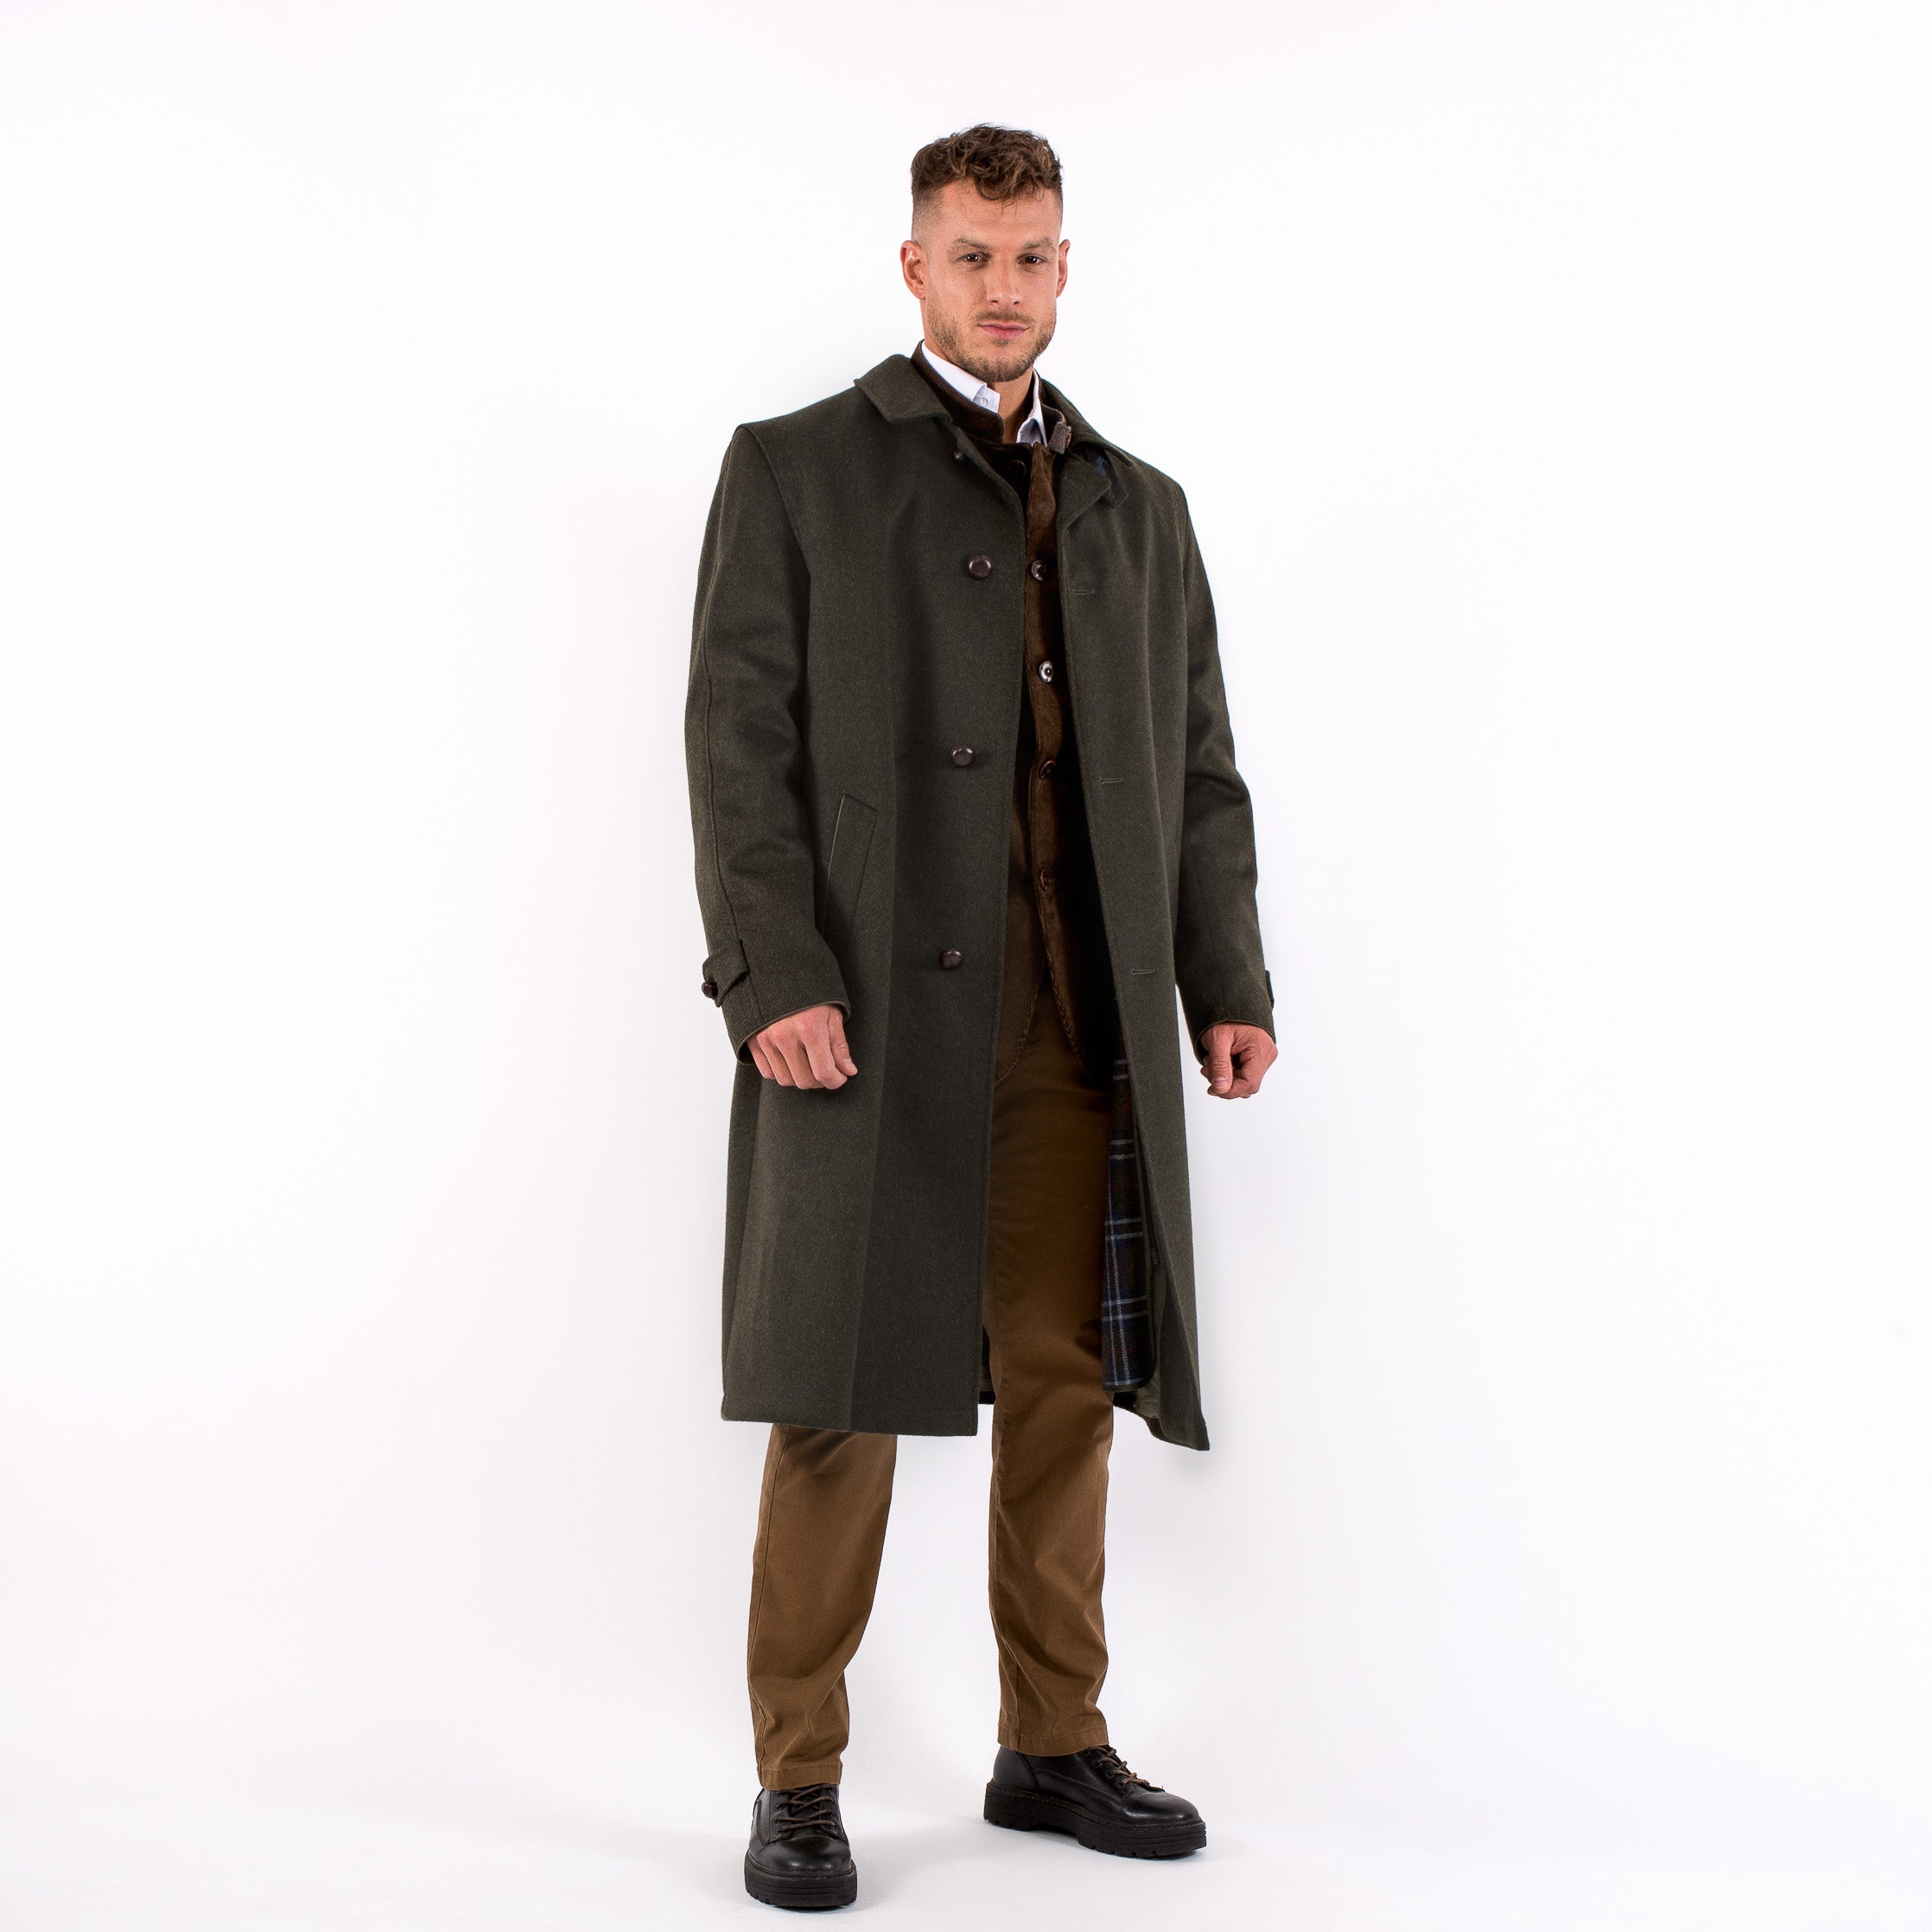 Sud Tiroler - Men's Loden Green Overcoat with ZIP - RWS - Robert W. Stolz